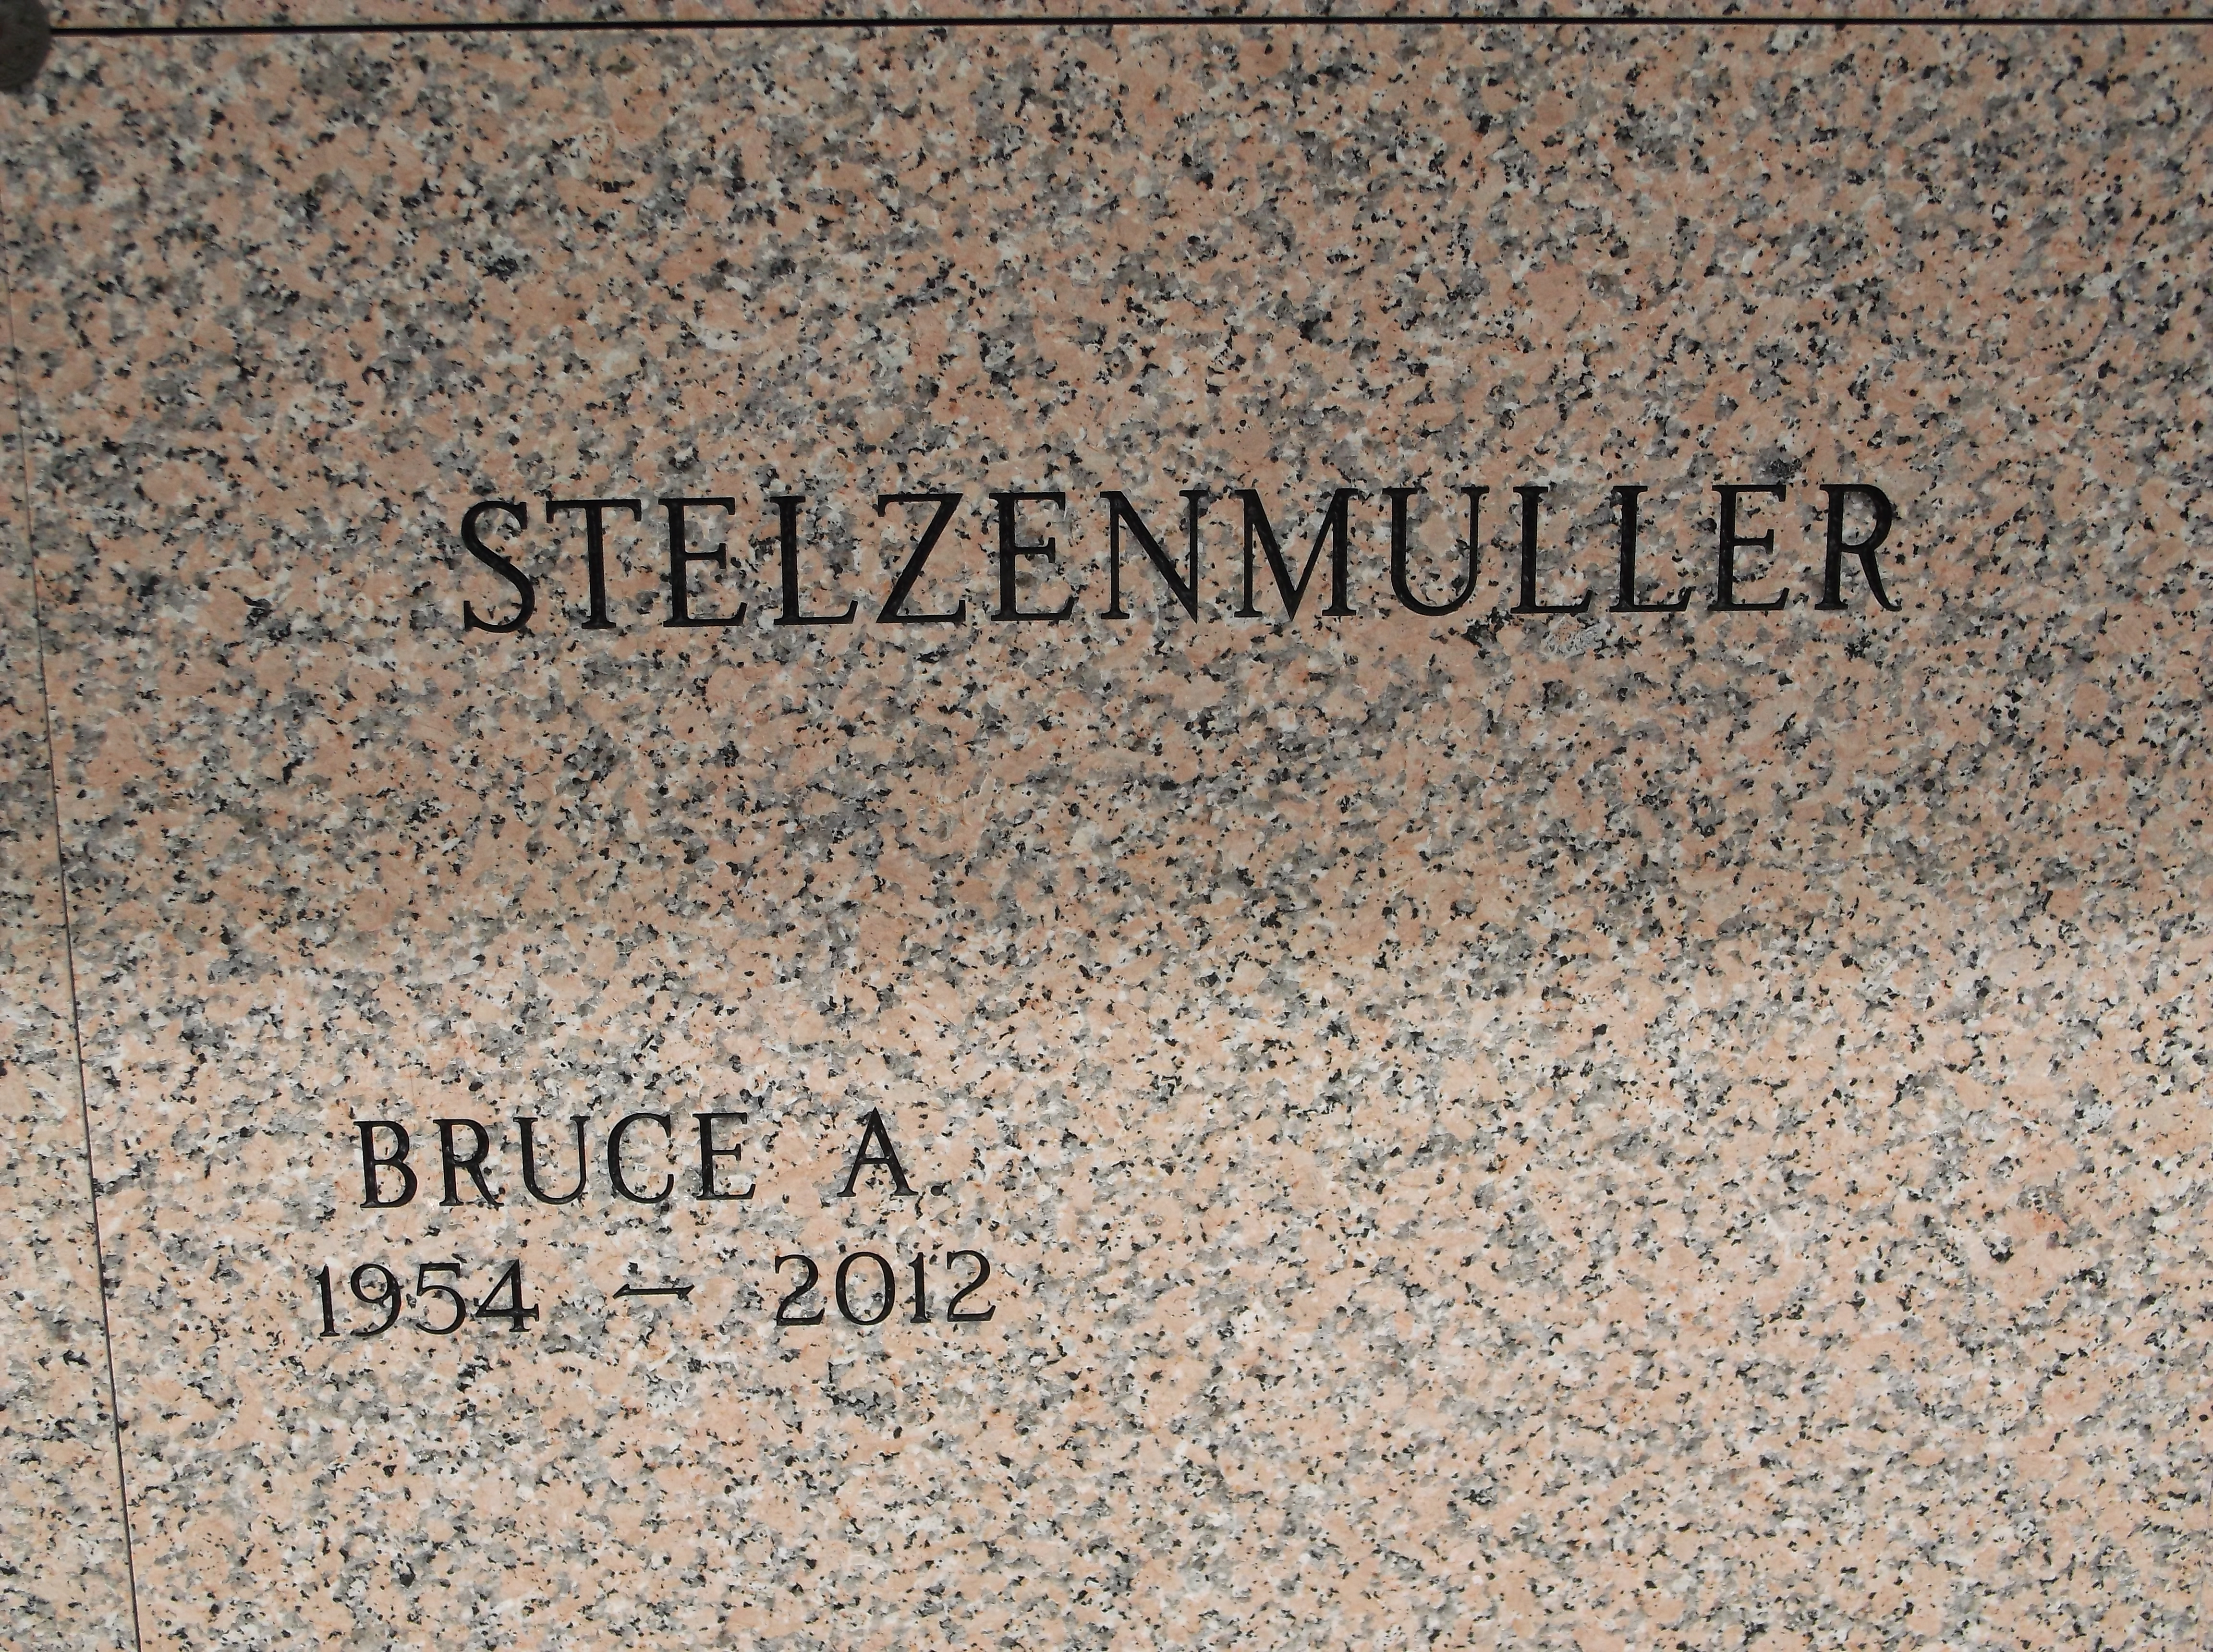 Bruce A Stelzenmuller